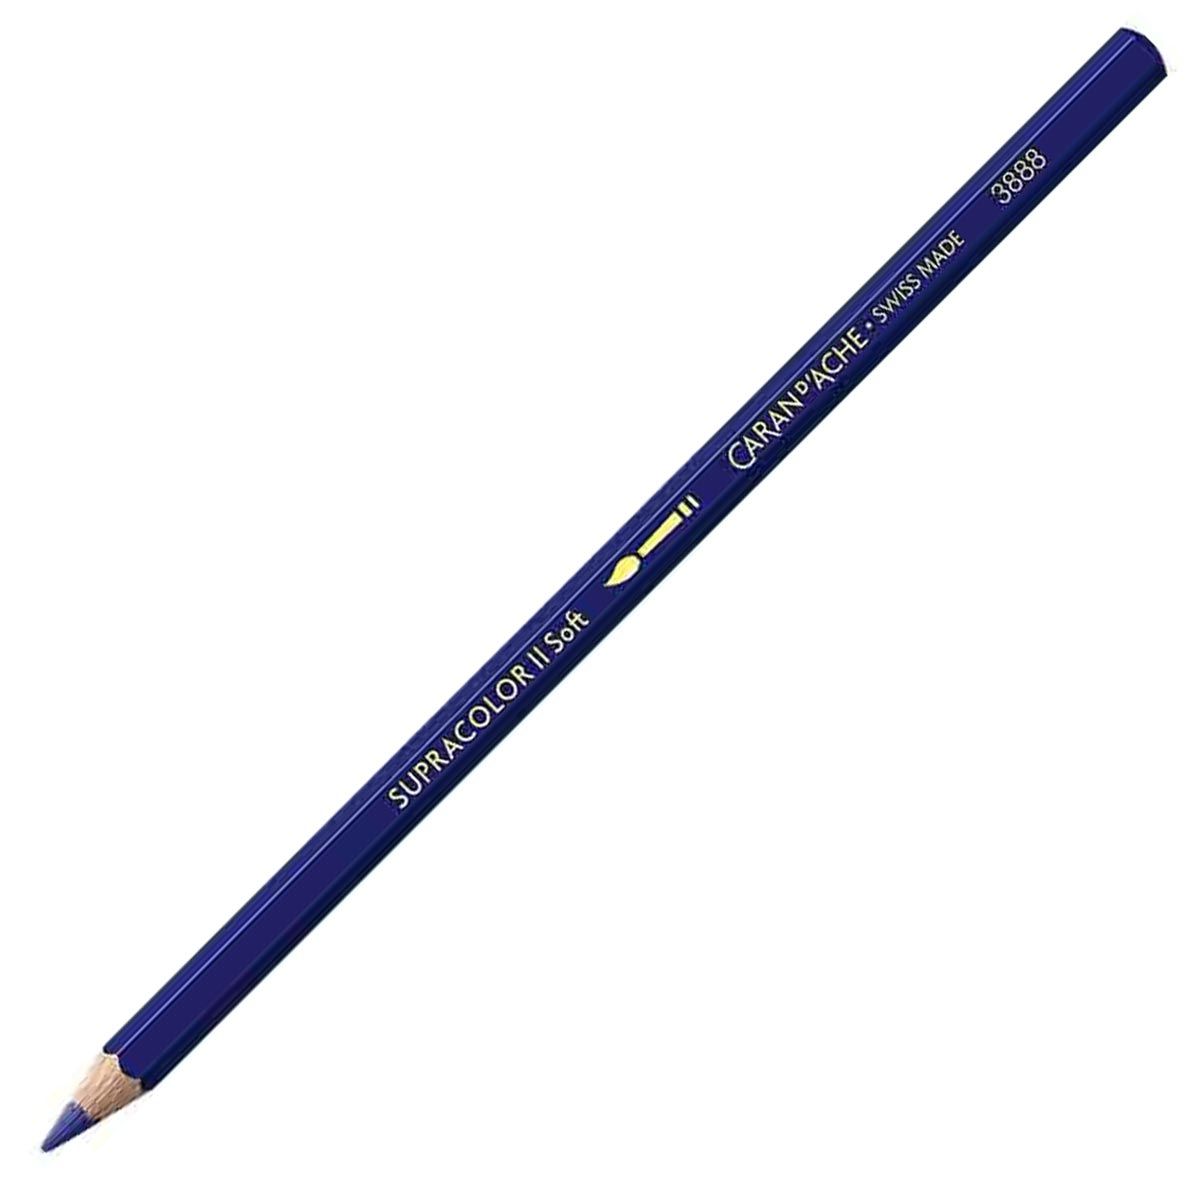 Caran d'Ache Supracolor ll Soft Aquarelle Pencil - Royal Blue 130